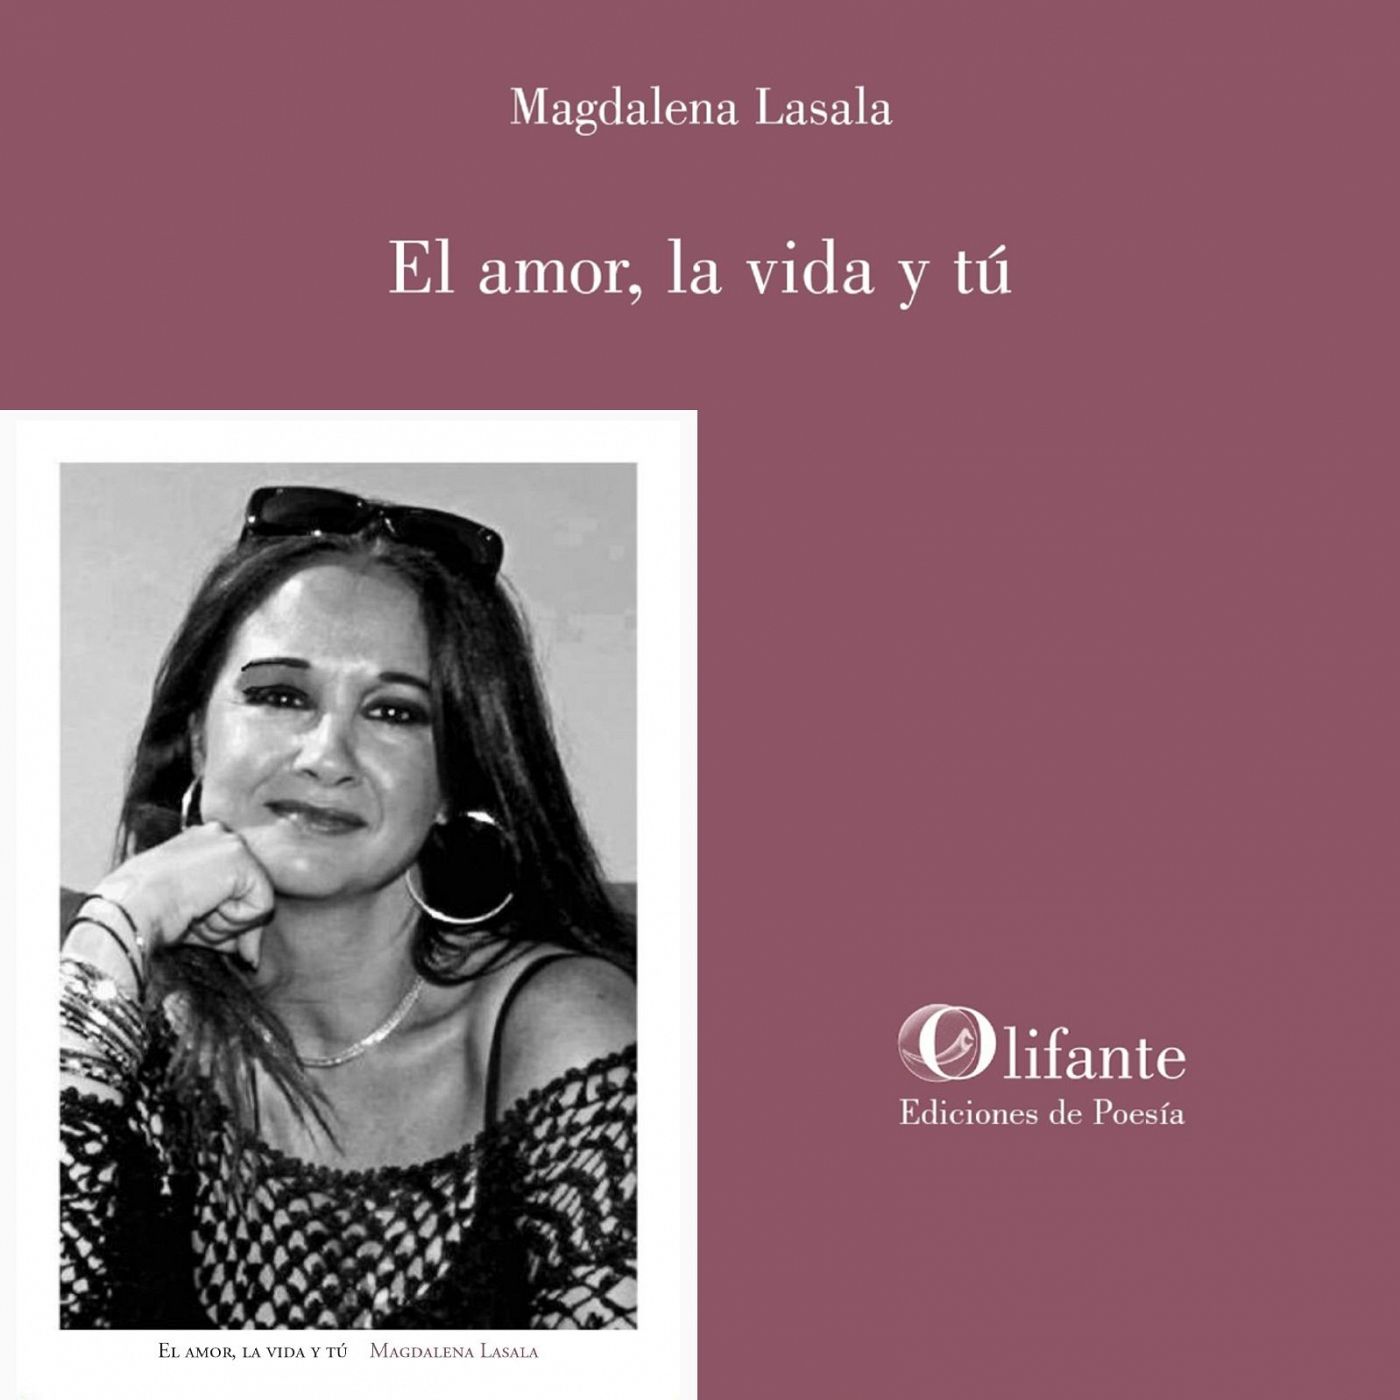 Metaverso - El amor, la vida y t (Magdalena Lasala, Ed. Olifante) - 25/03/2024